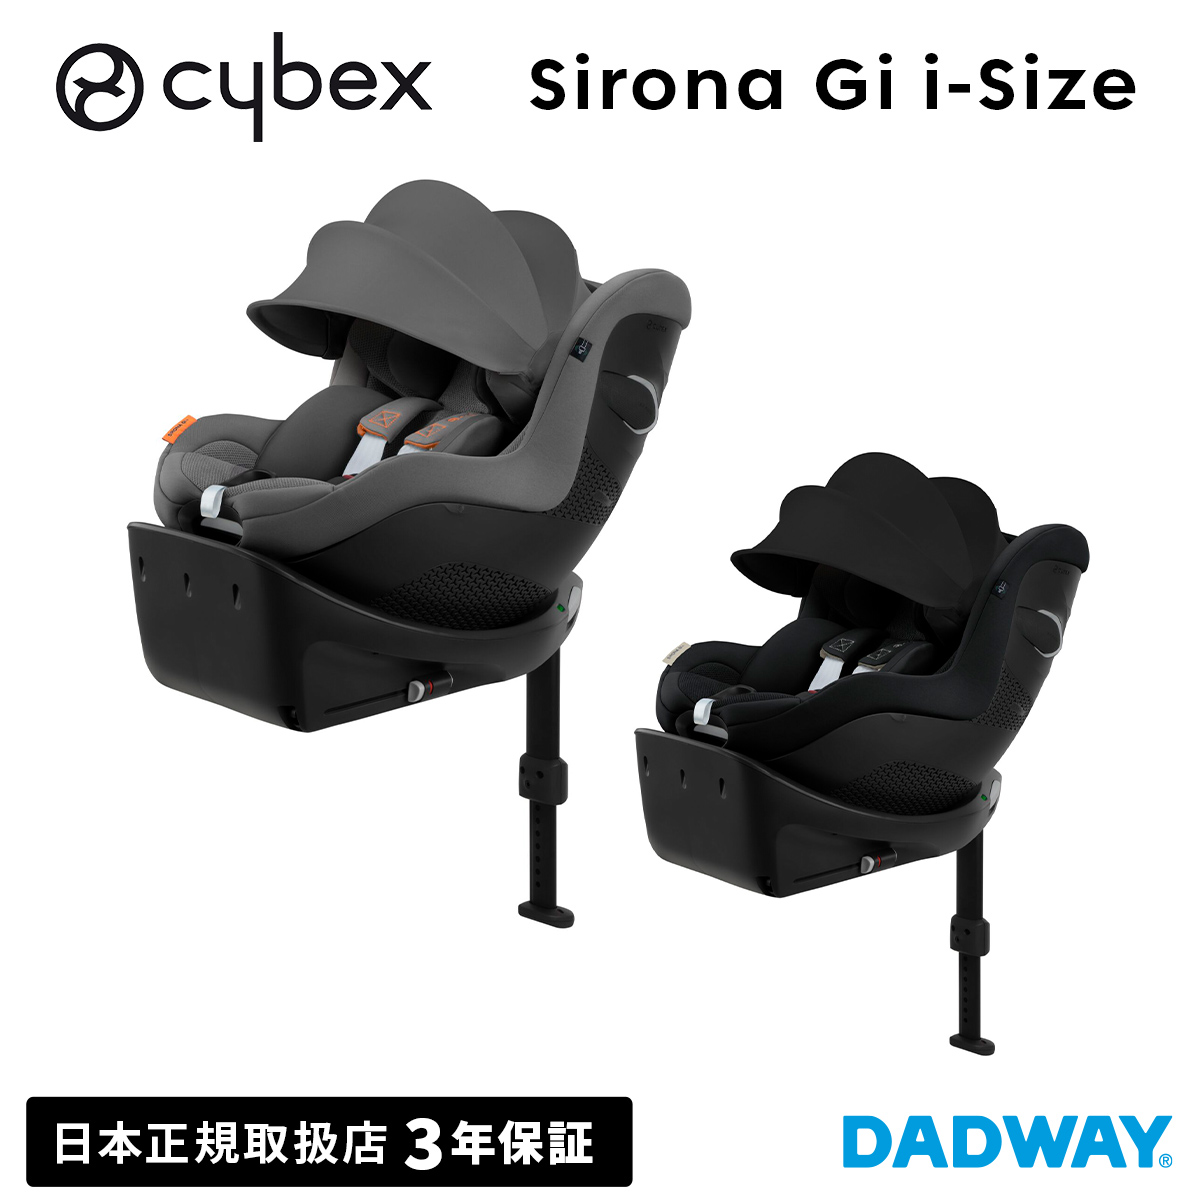 【楽天市場】【新商品】CYBEX サイベックス シローナ Gi i-Size